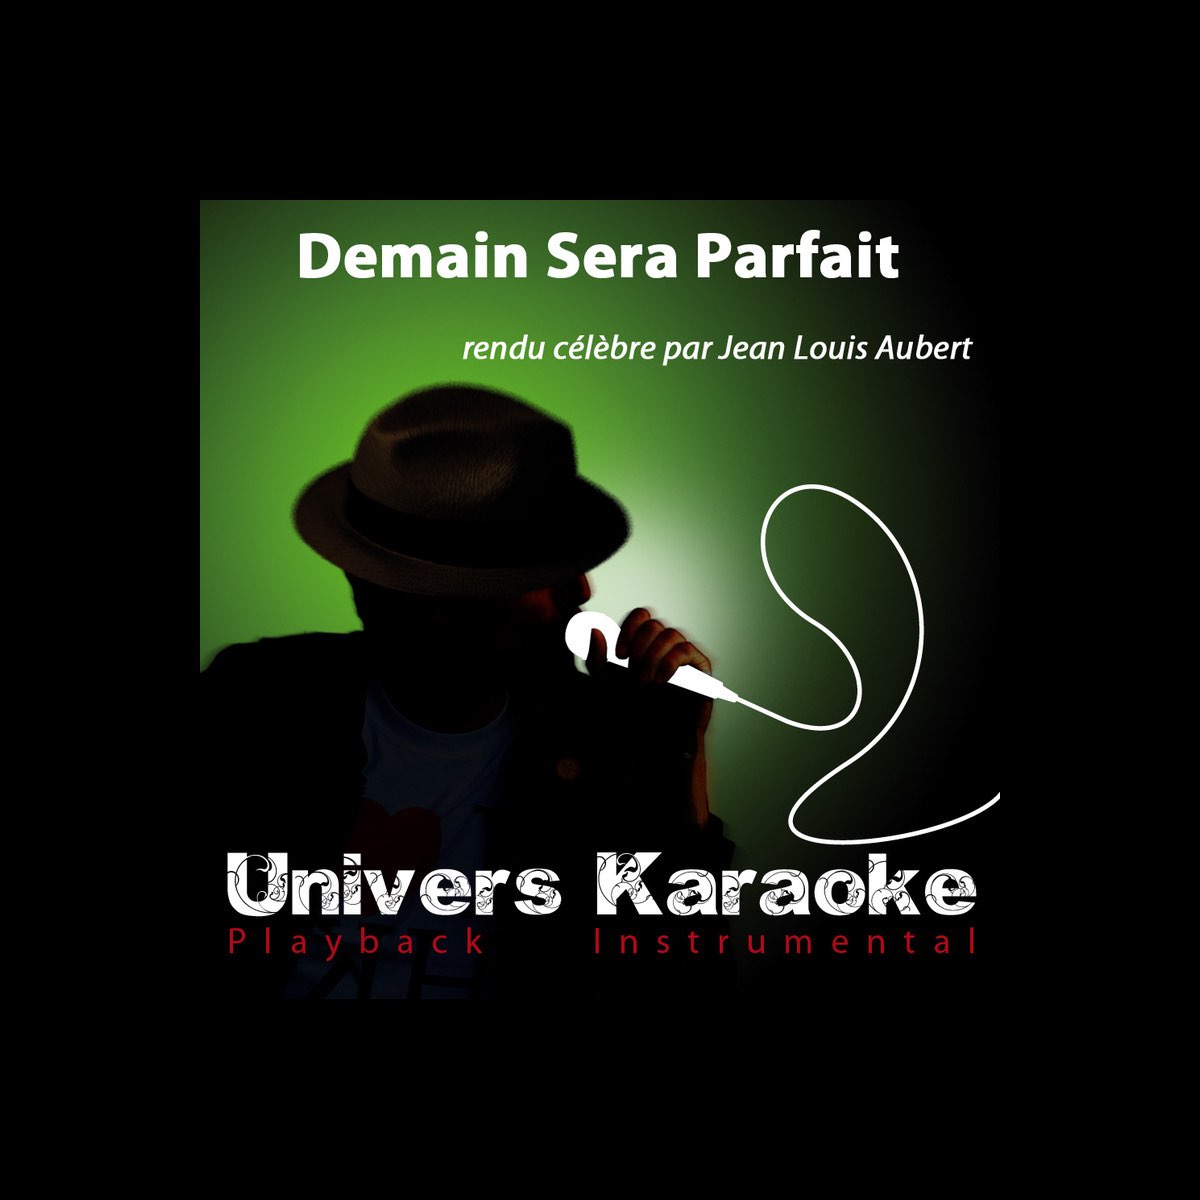 Demain sera parfait (Rendu célèbre par Jean-Louis Aubert) [Version karaoké]  - Single – Album par Univers Karaoké – Apple Music